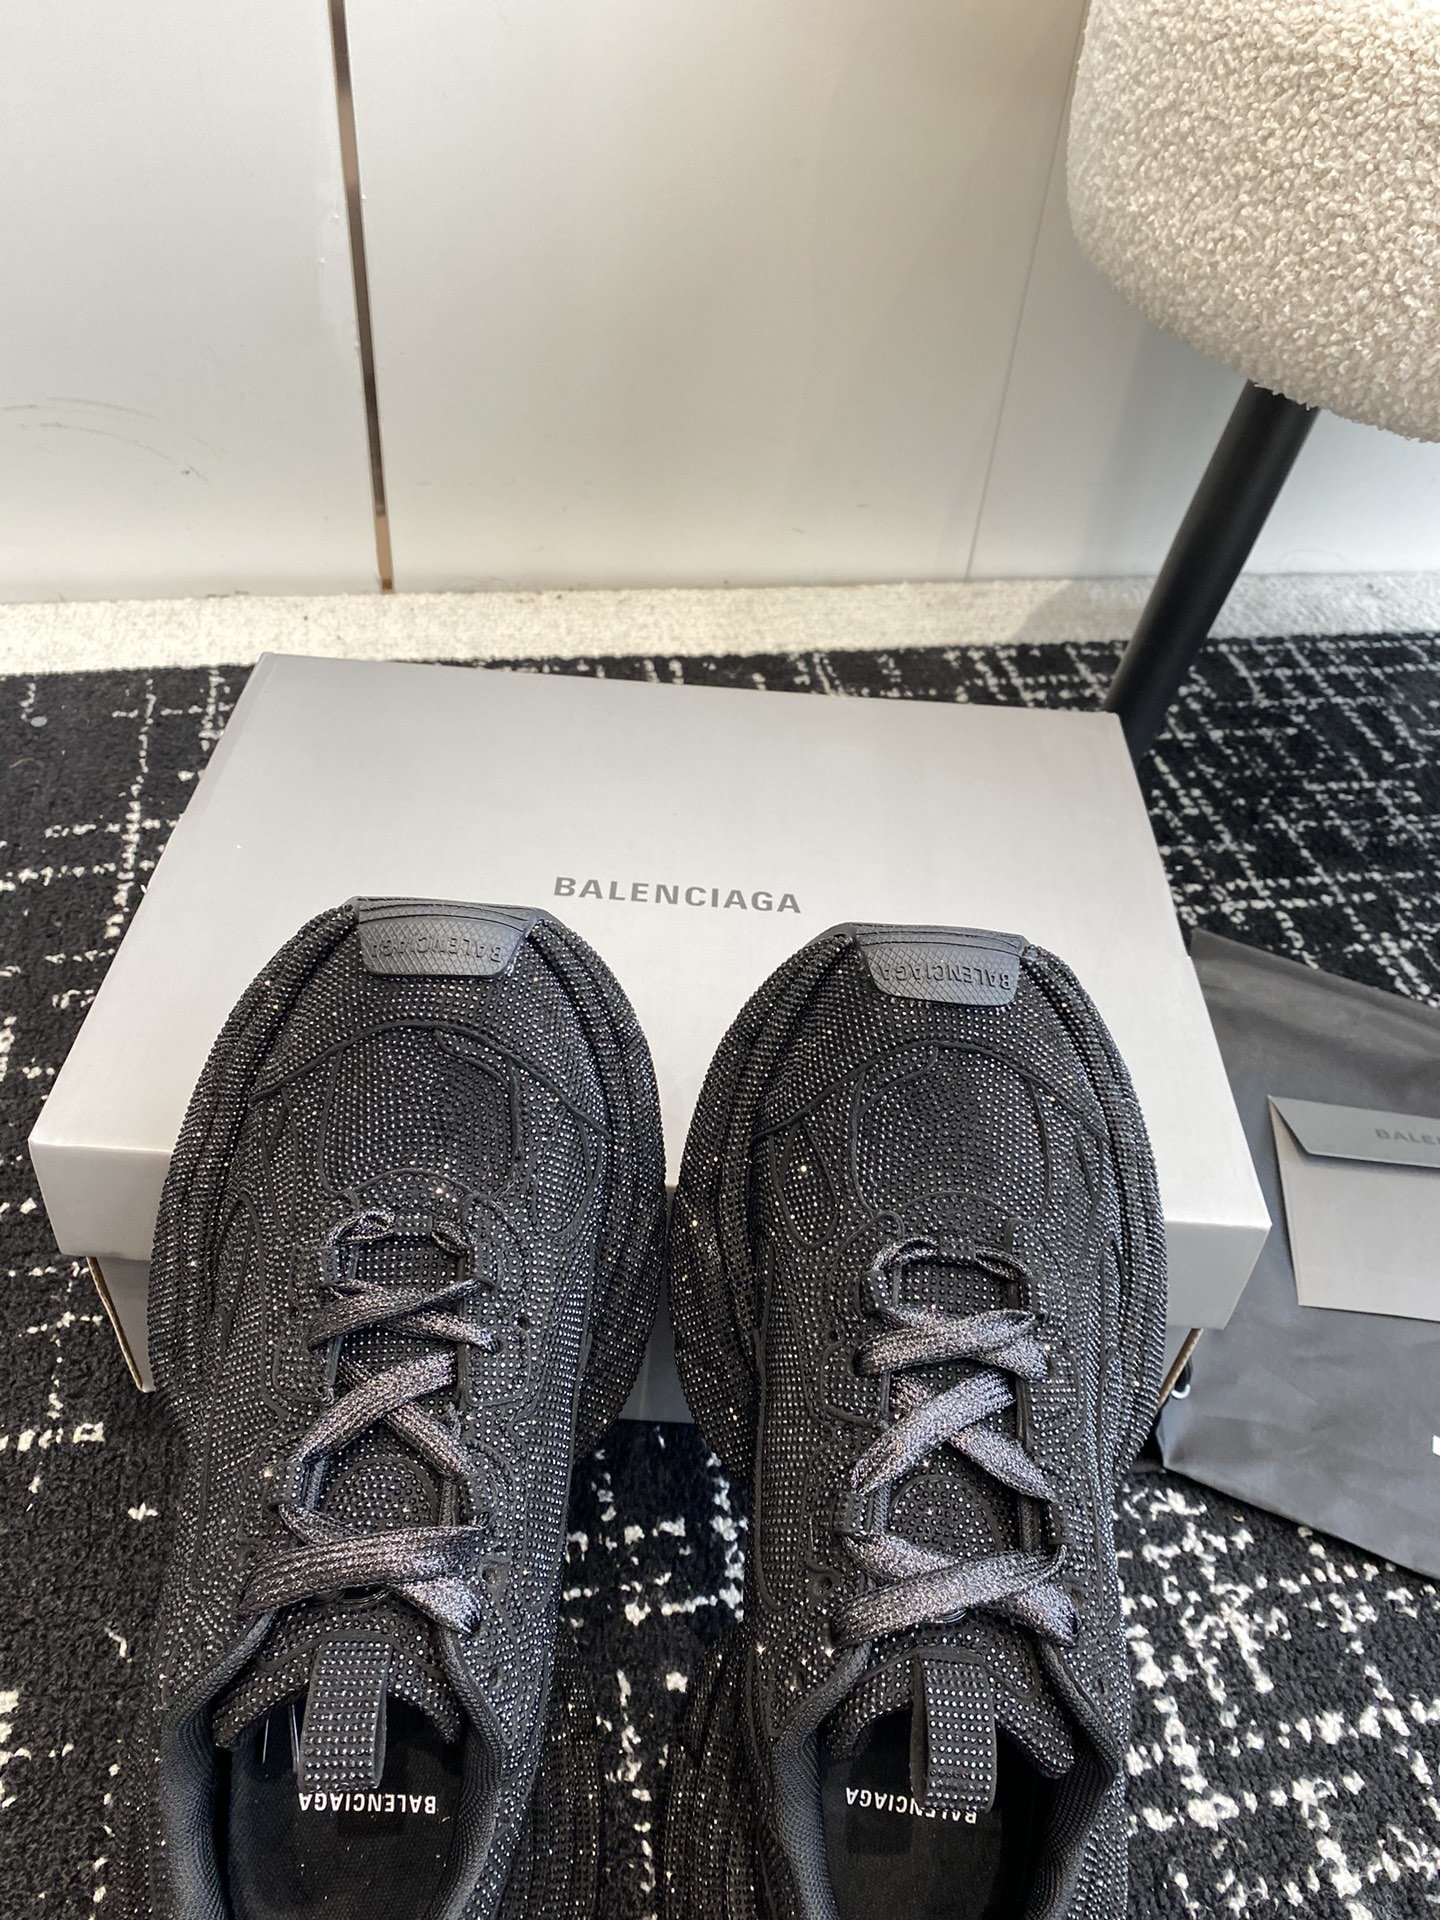 新款Balenciaga3XLSneaker满钻施华洛世奇系列鞋面鞋身全部用满钻覆盖整体呈现奢华感觉鞋型